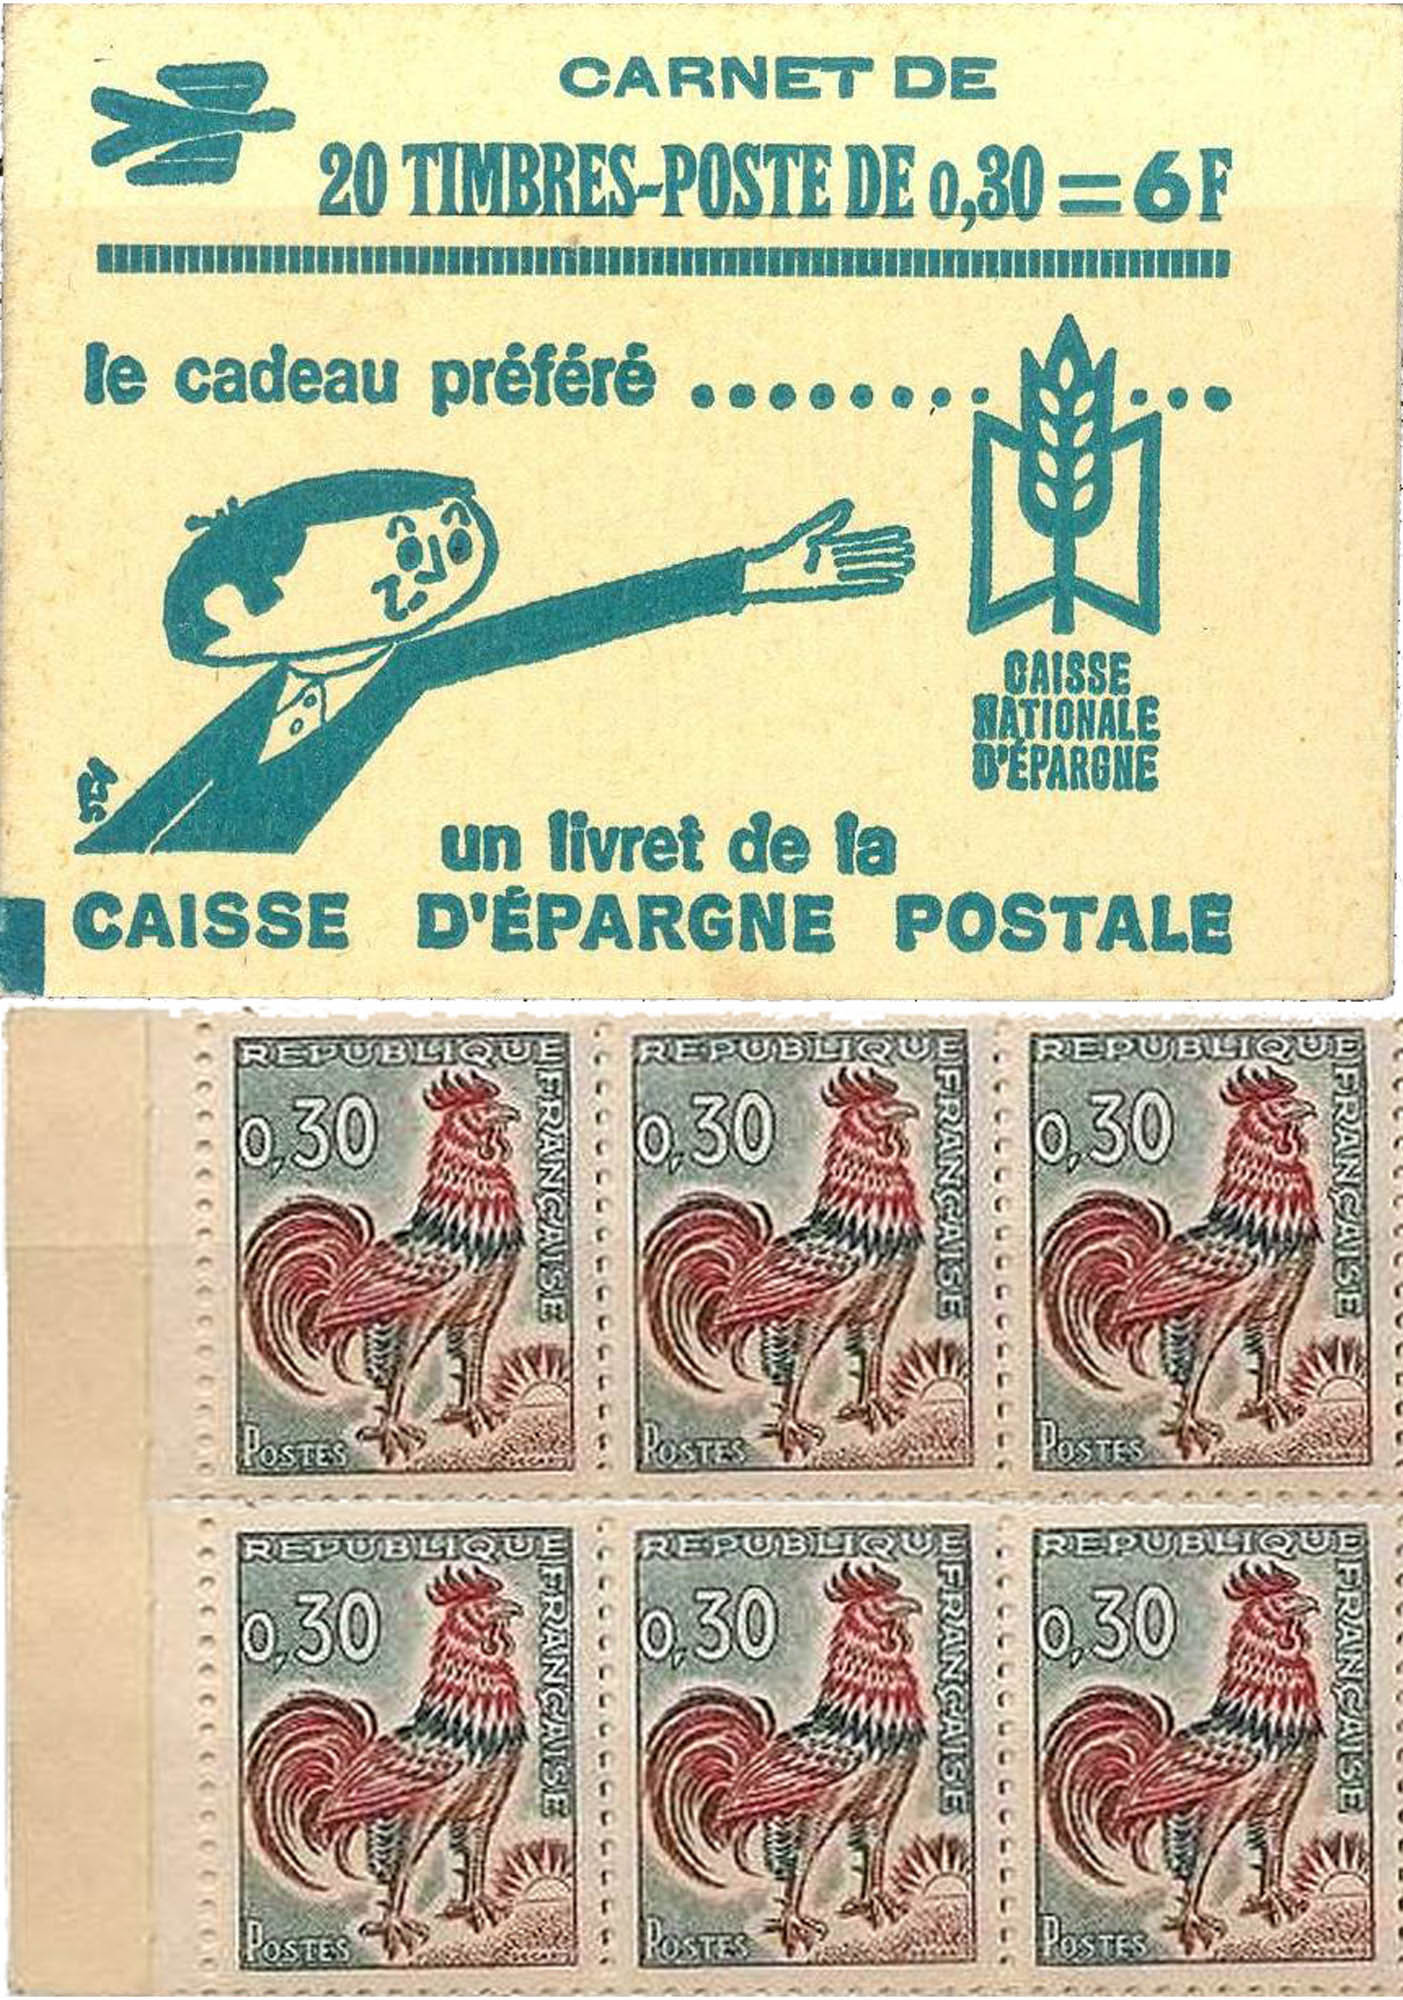 Caisse d'épargne postale - Coq de Decaris